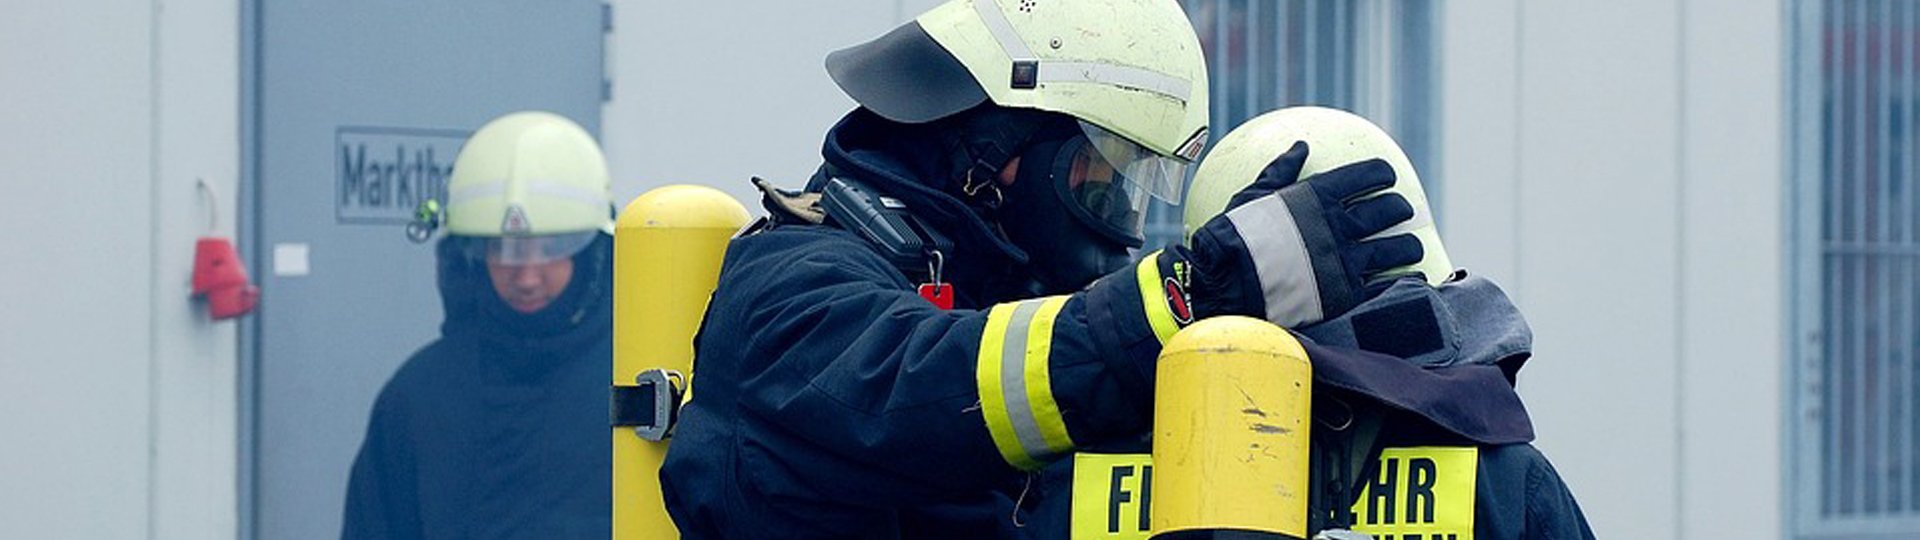 Unfallversicherung für Feuerwehr | DBV Freiberg Roy Bach